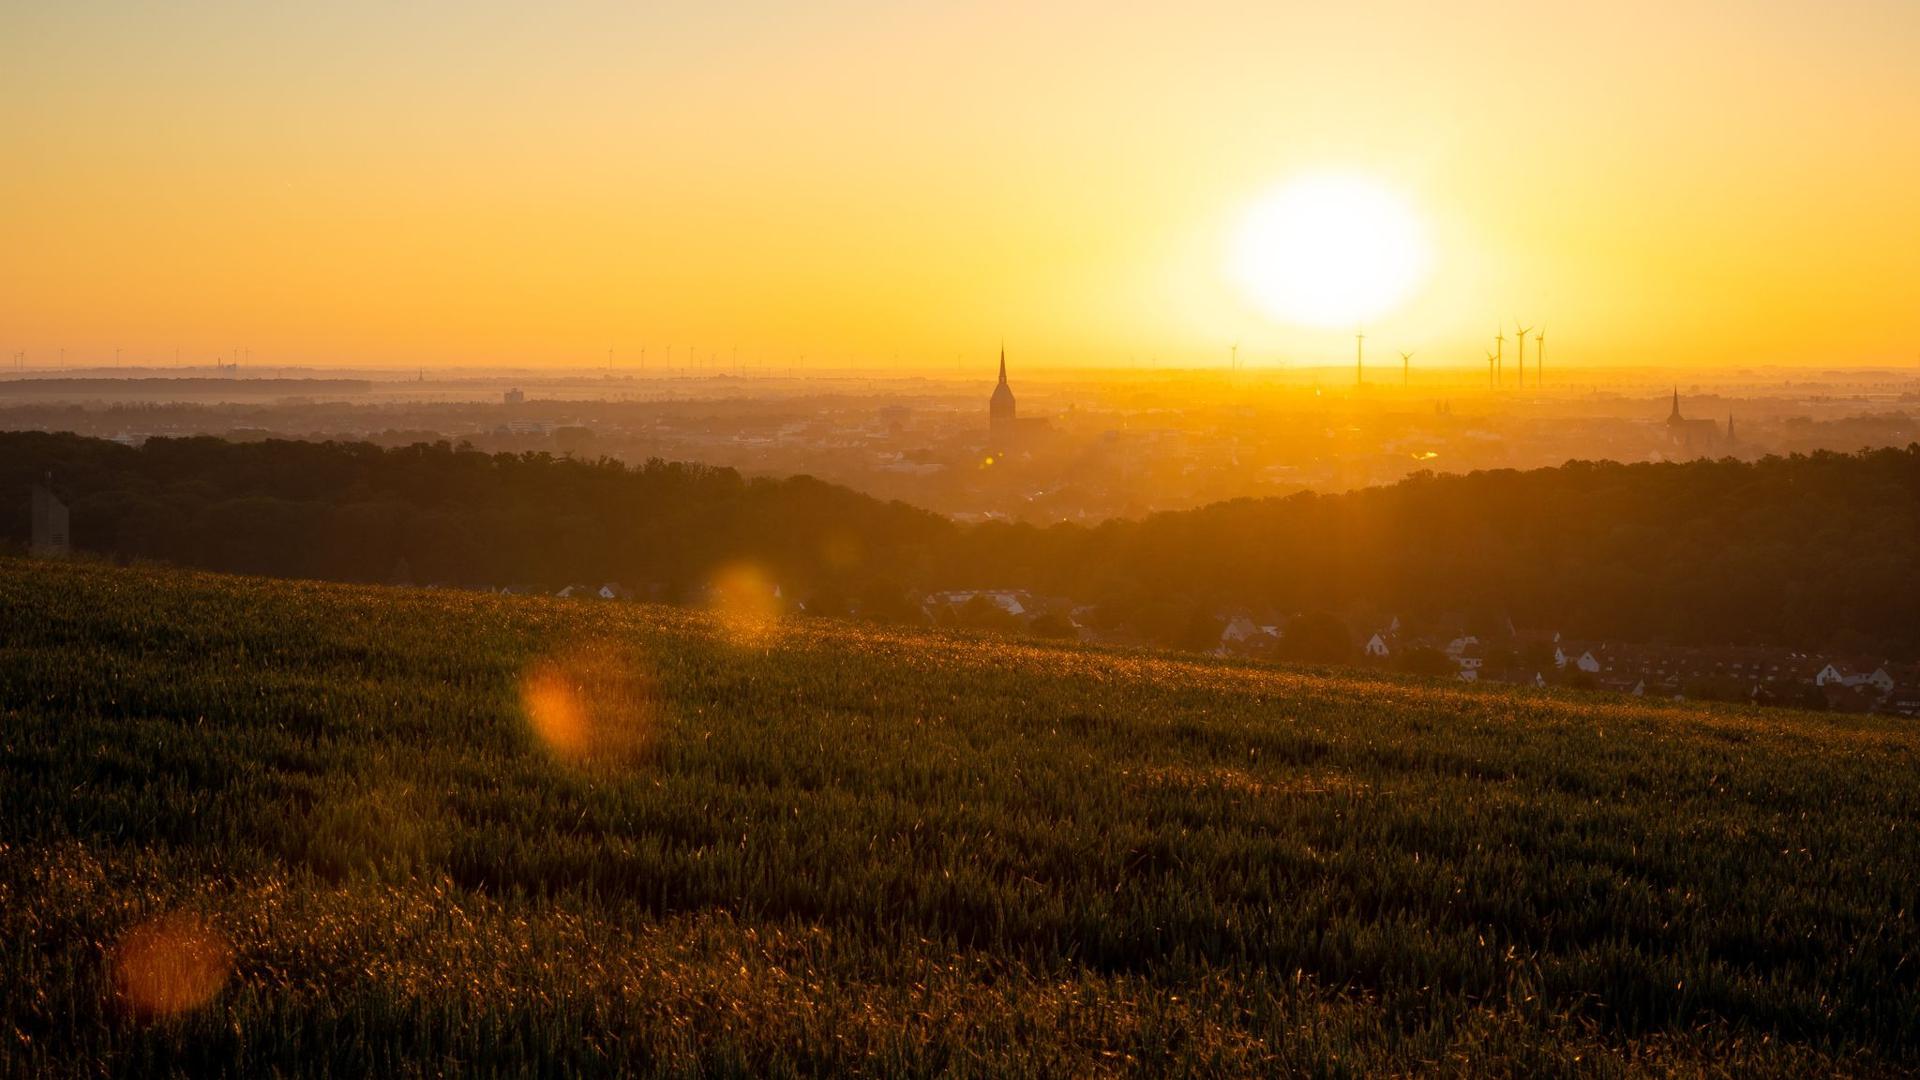 Sonnenaufgang bei Hildesheim in Niedersachsen.